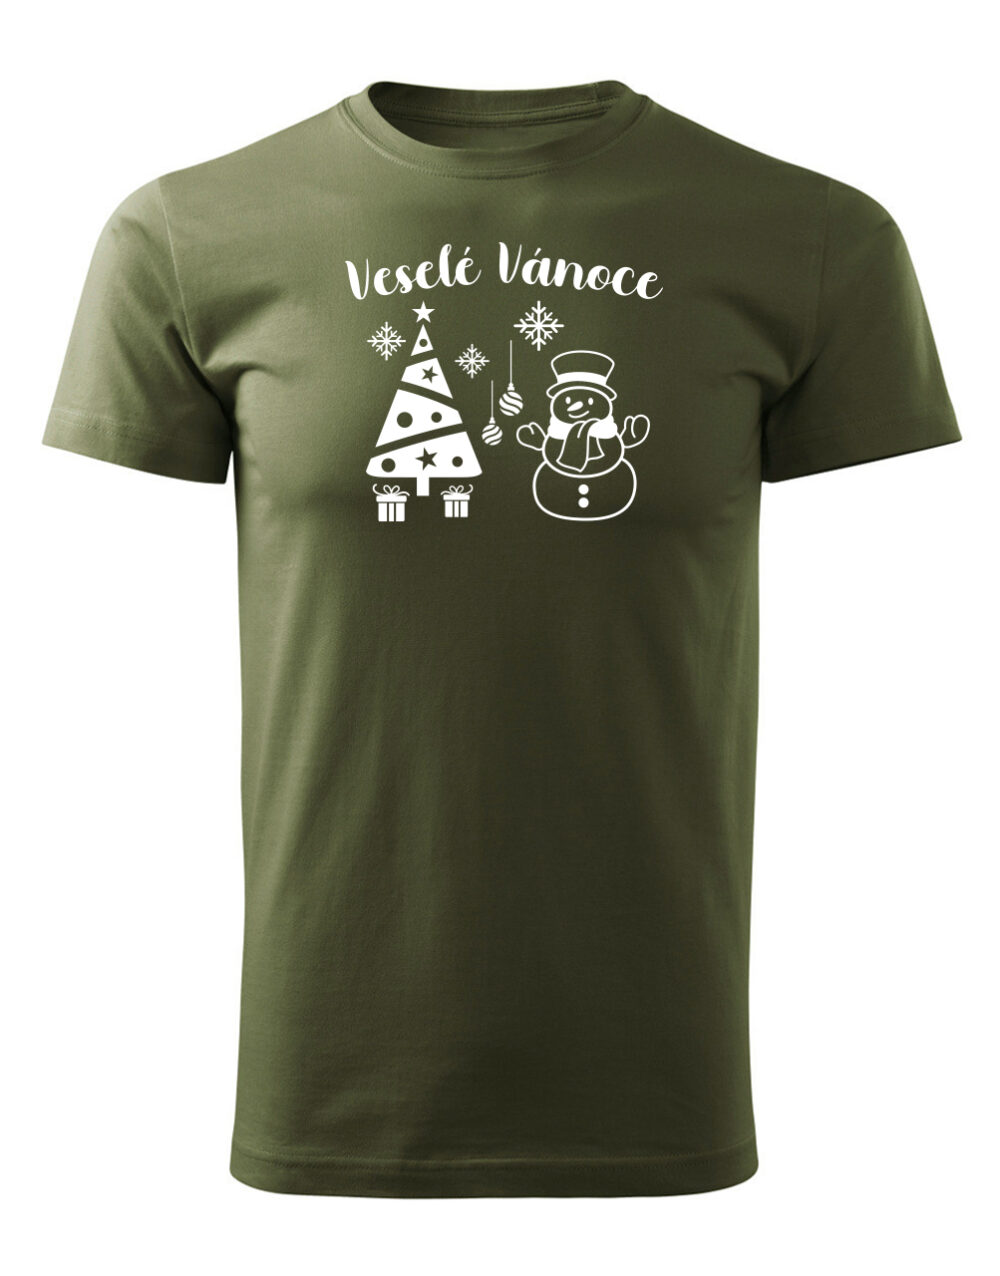 Pánské tričko s potiskem Veselé vánoce vojenská zelená